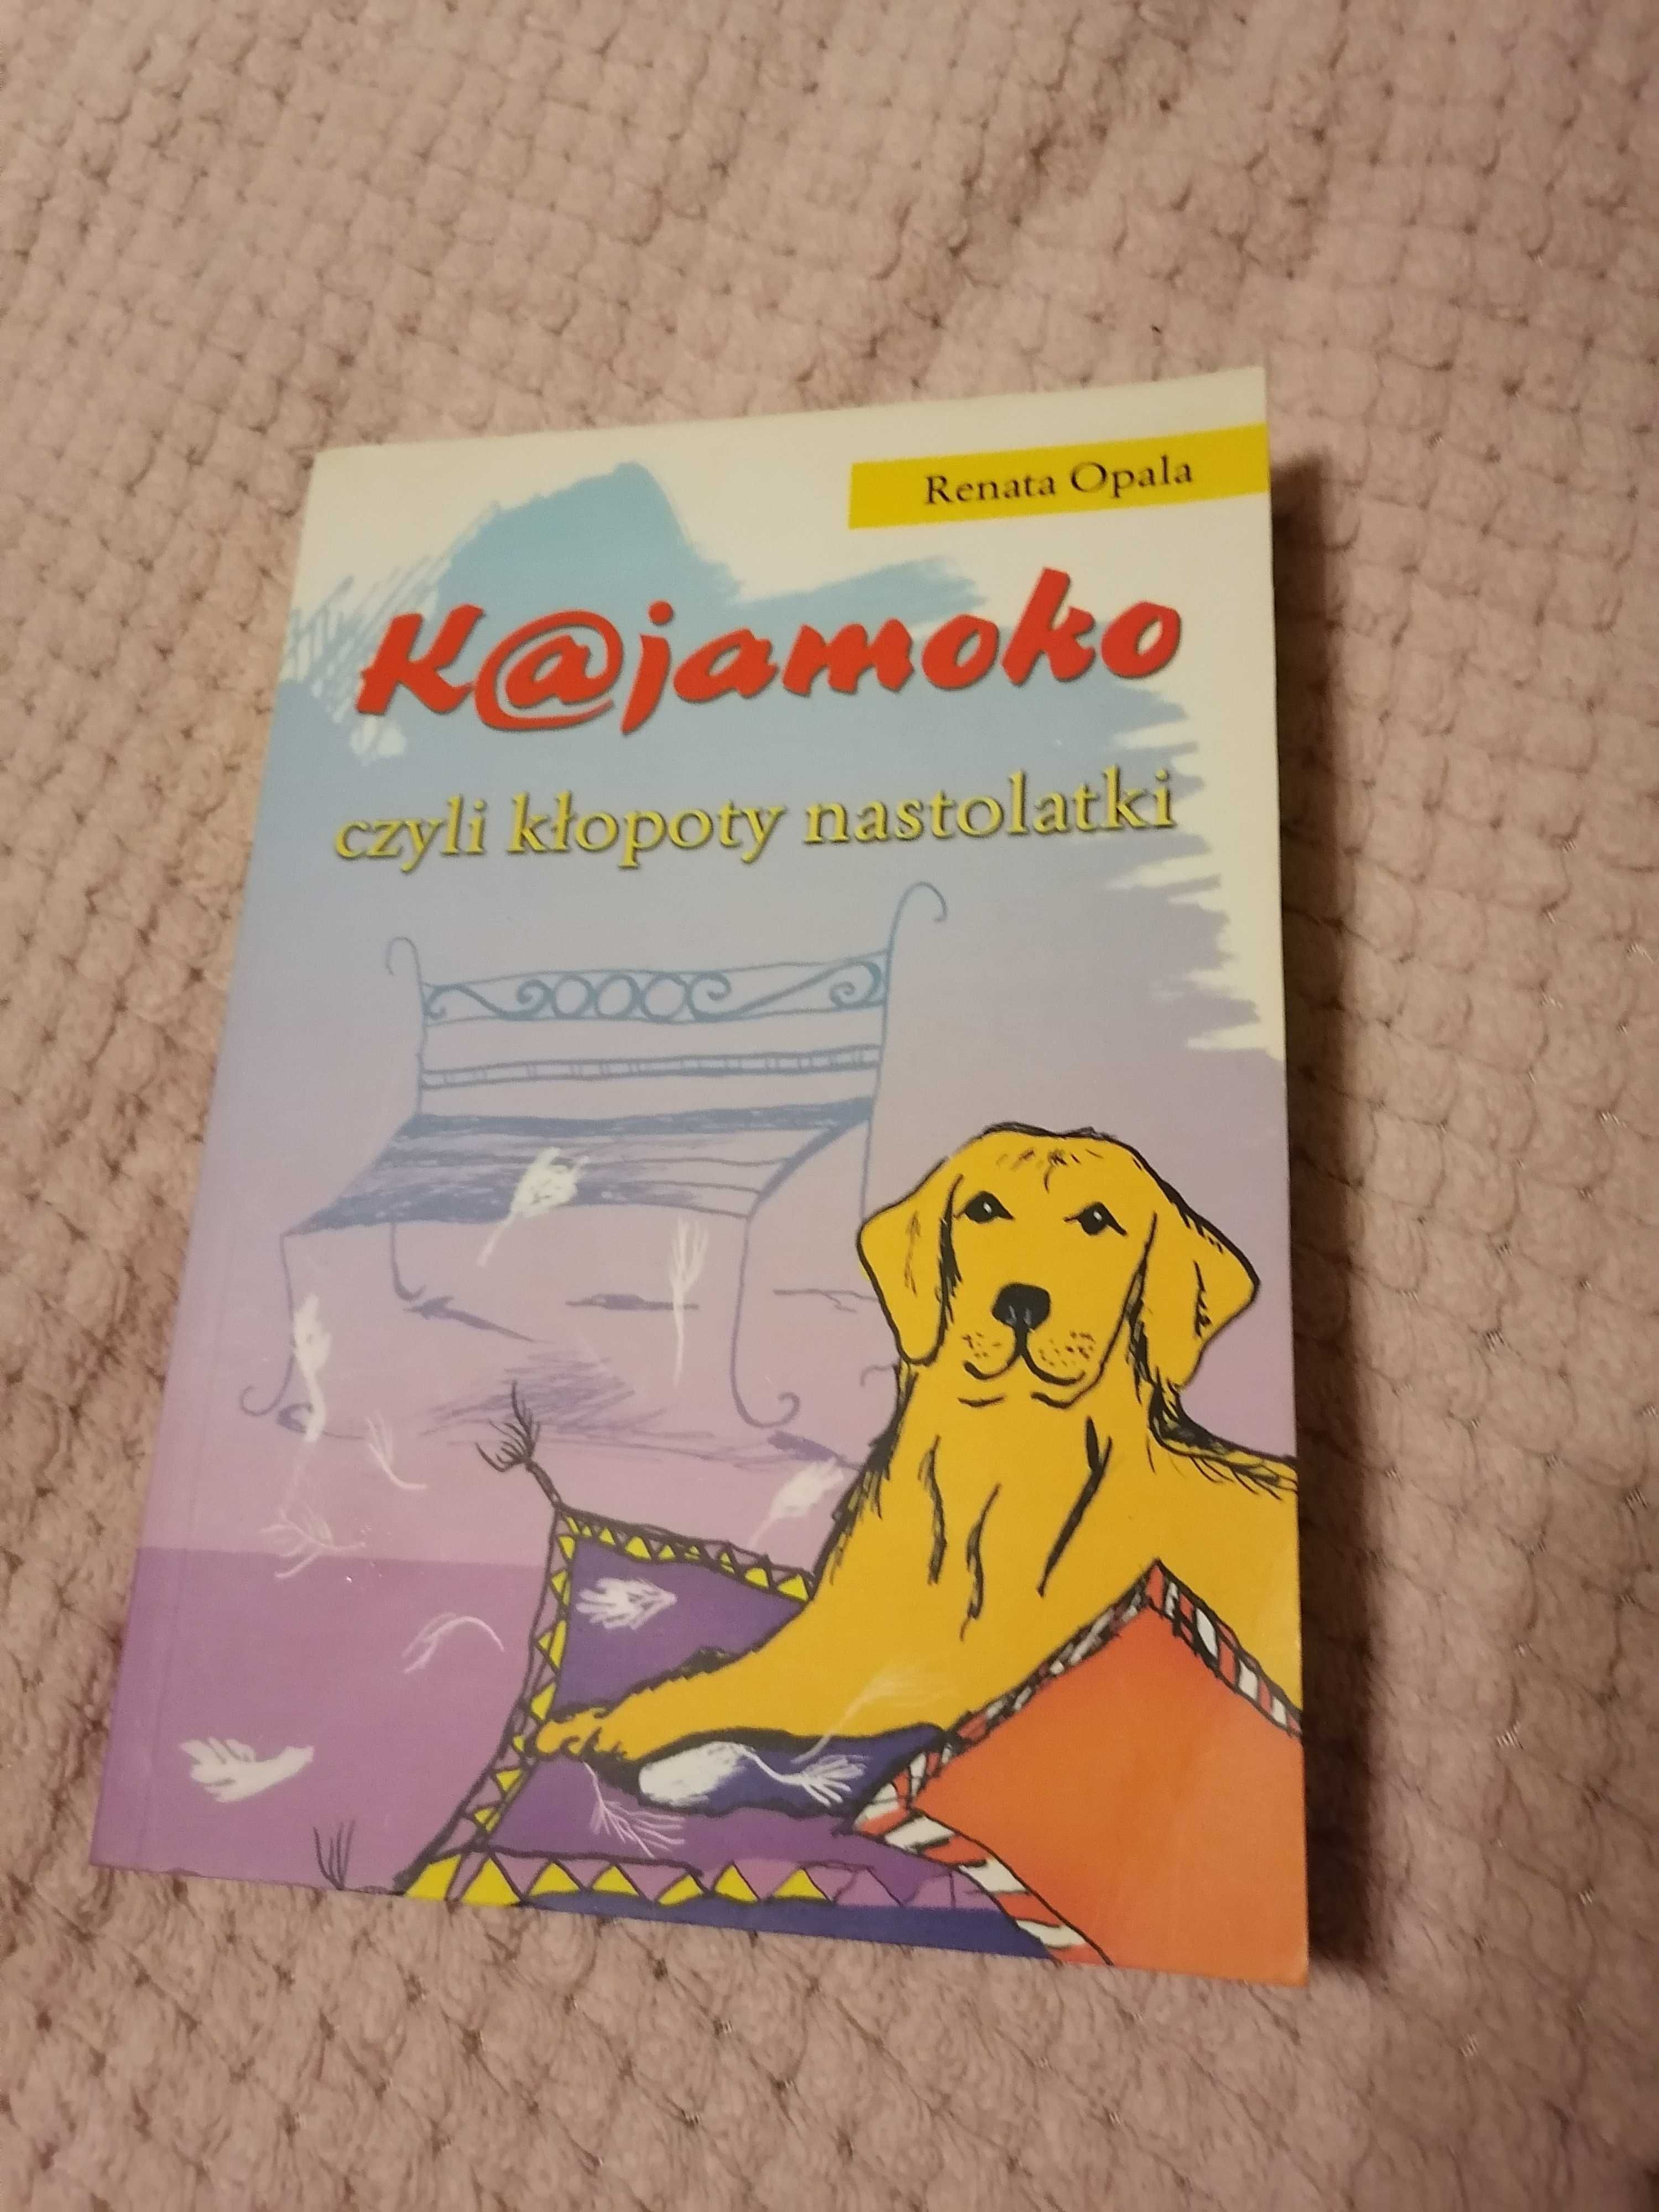 Książka "Kajamoko czyli kłopoty nastolatki"